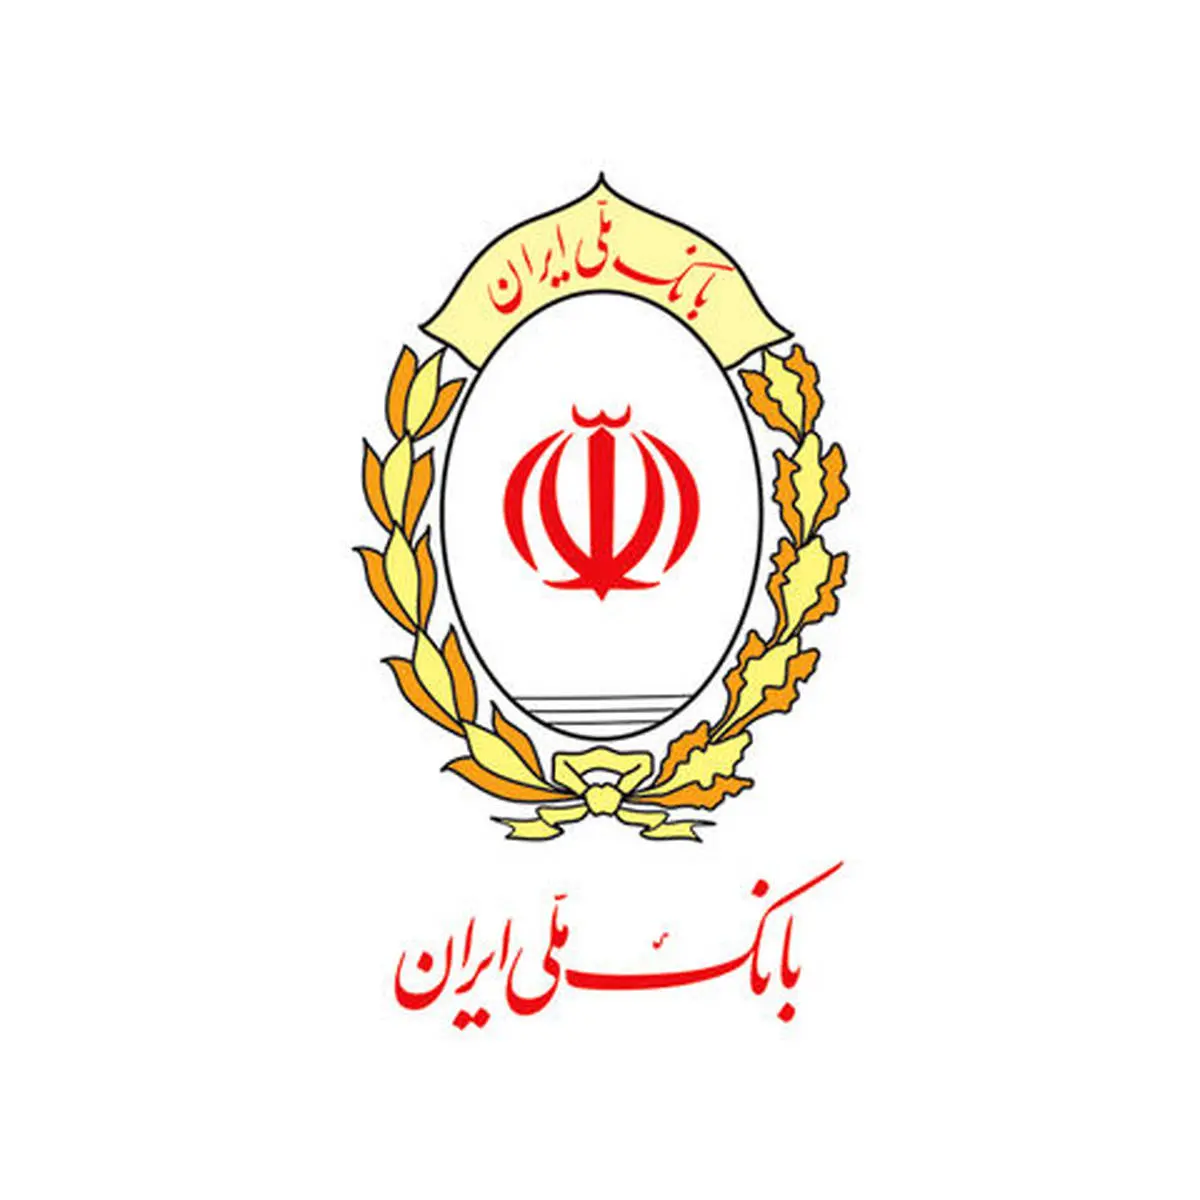 امکان معامله برخط سهام از طریق حساب وکالتی بانک ملی ایران